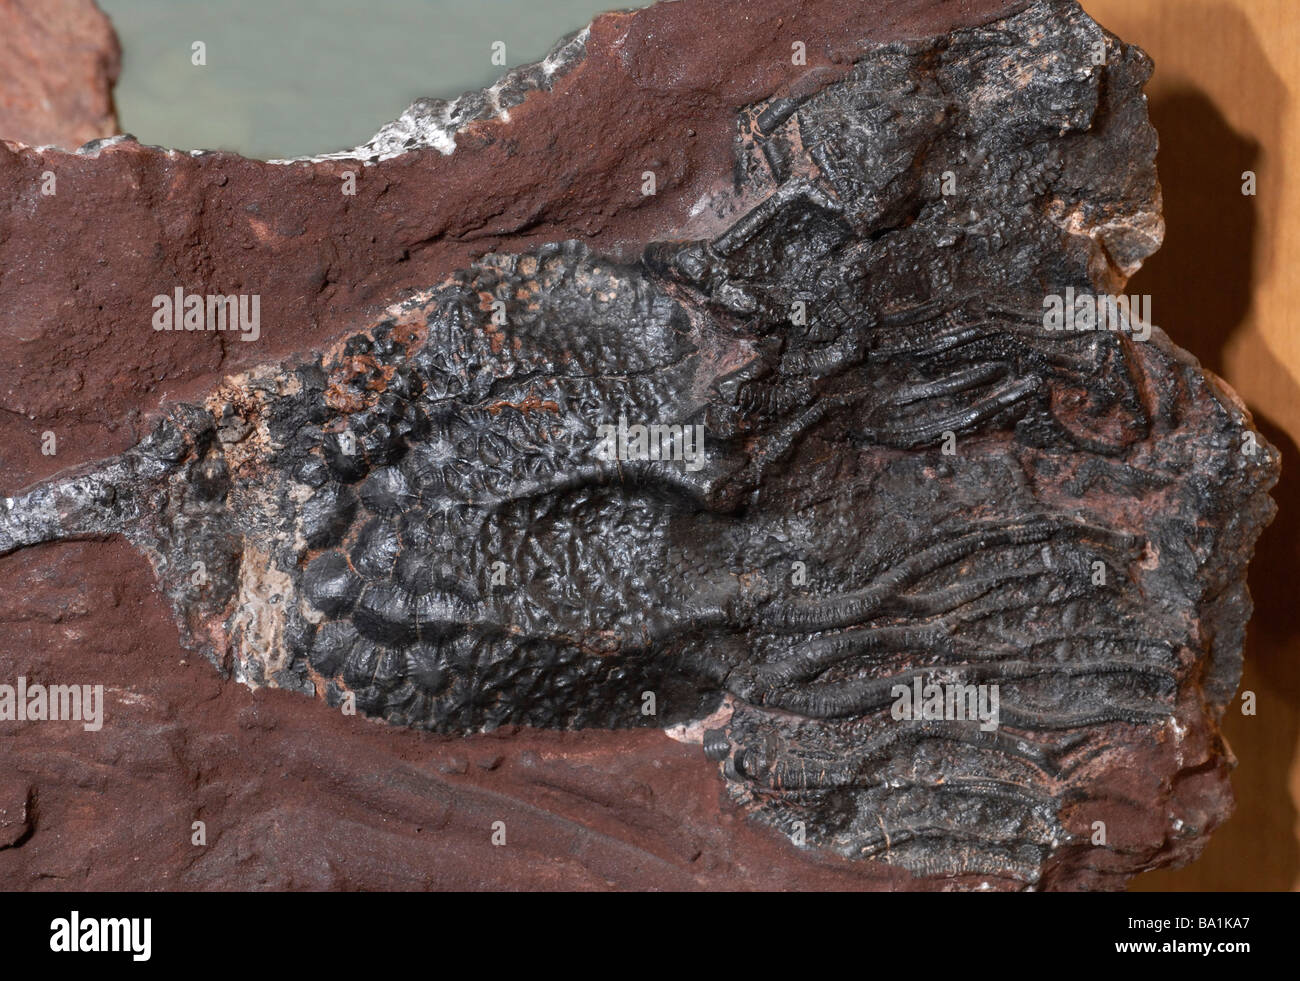 Crinoideos, fósiles de animales marinos, también conocido como mar lirios o pluma-estrellas Foto de stock